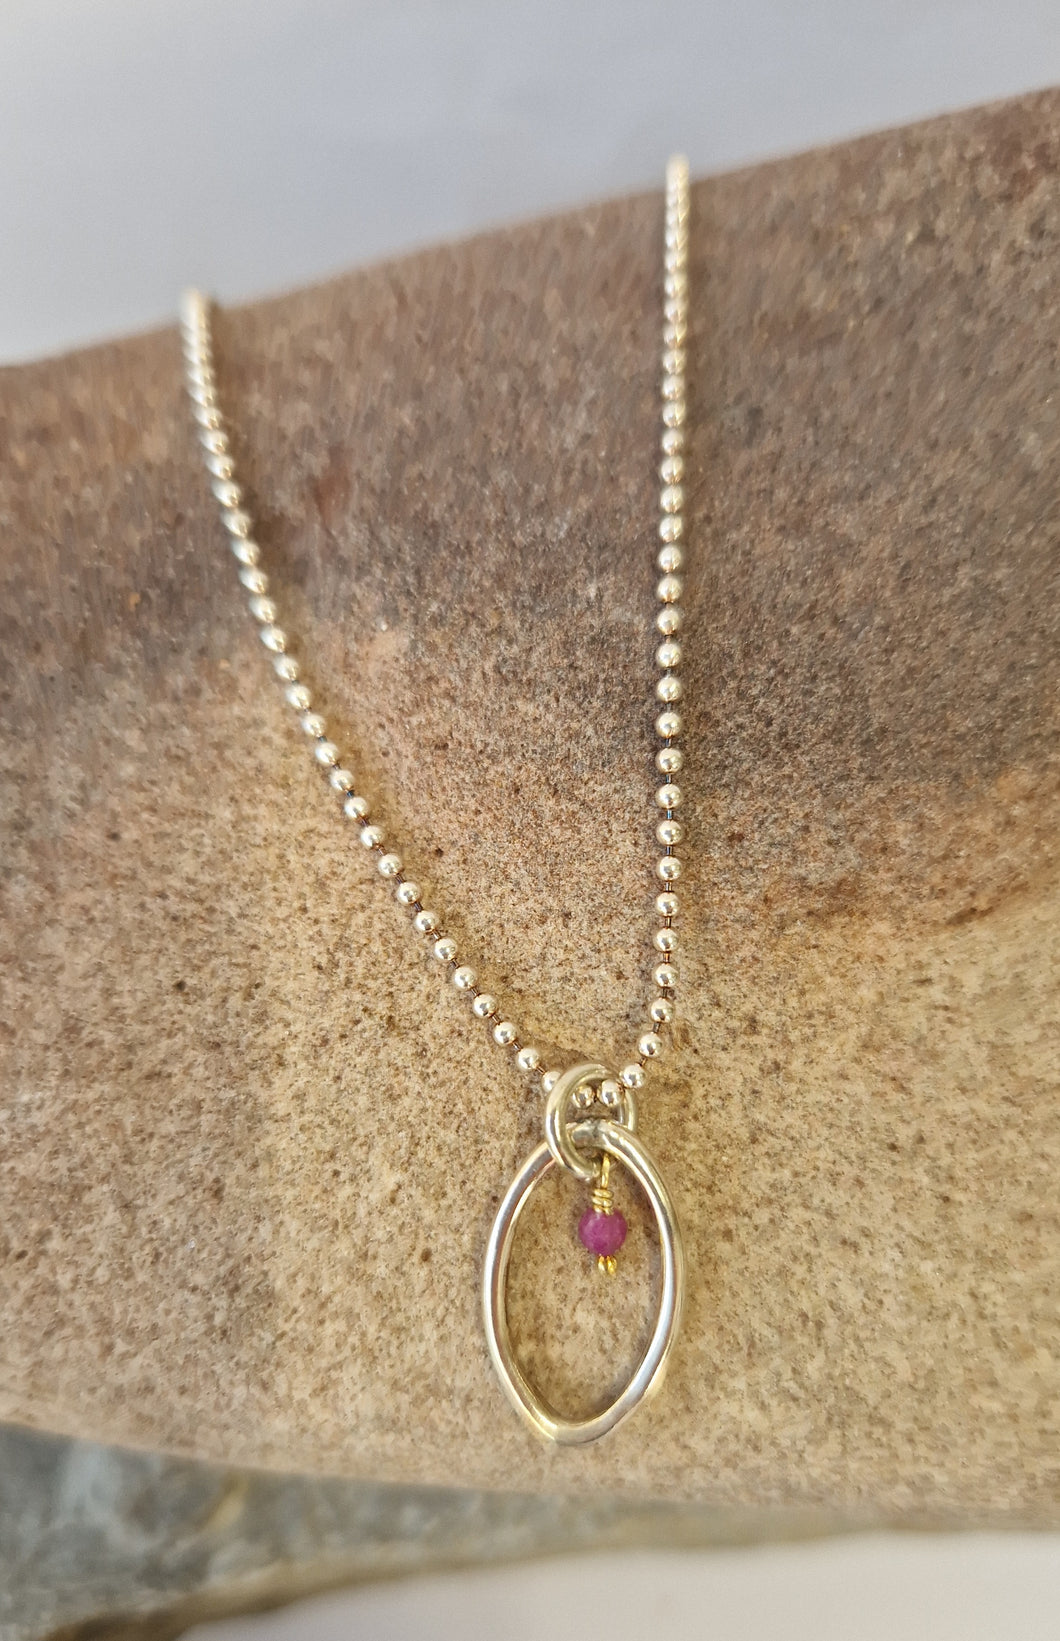 Elipse single pendant with bead